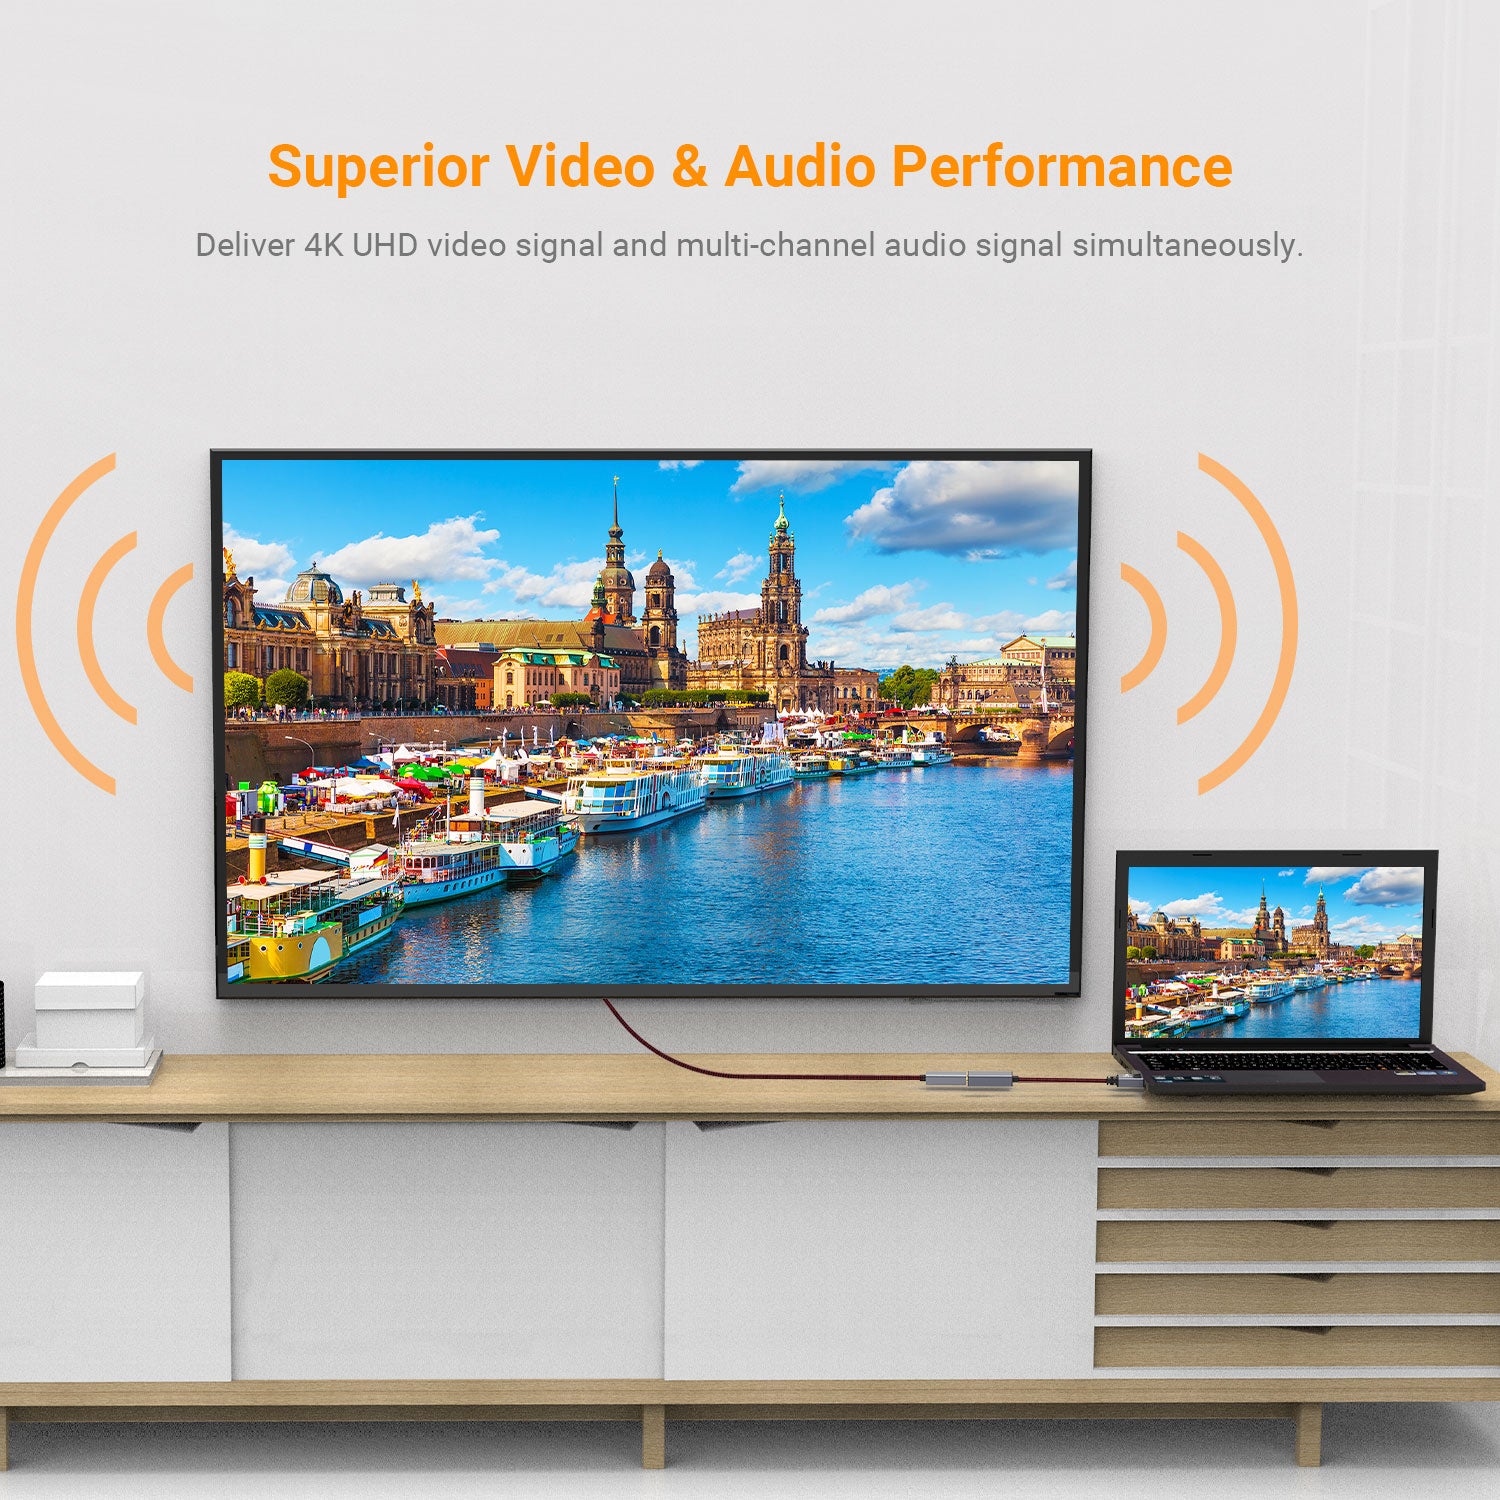 Superior Video & Audio Performance